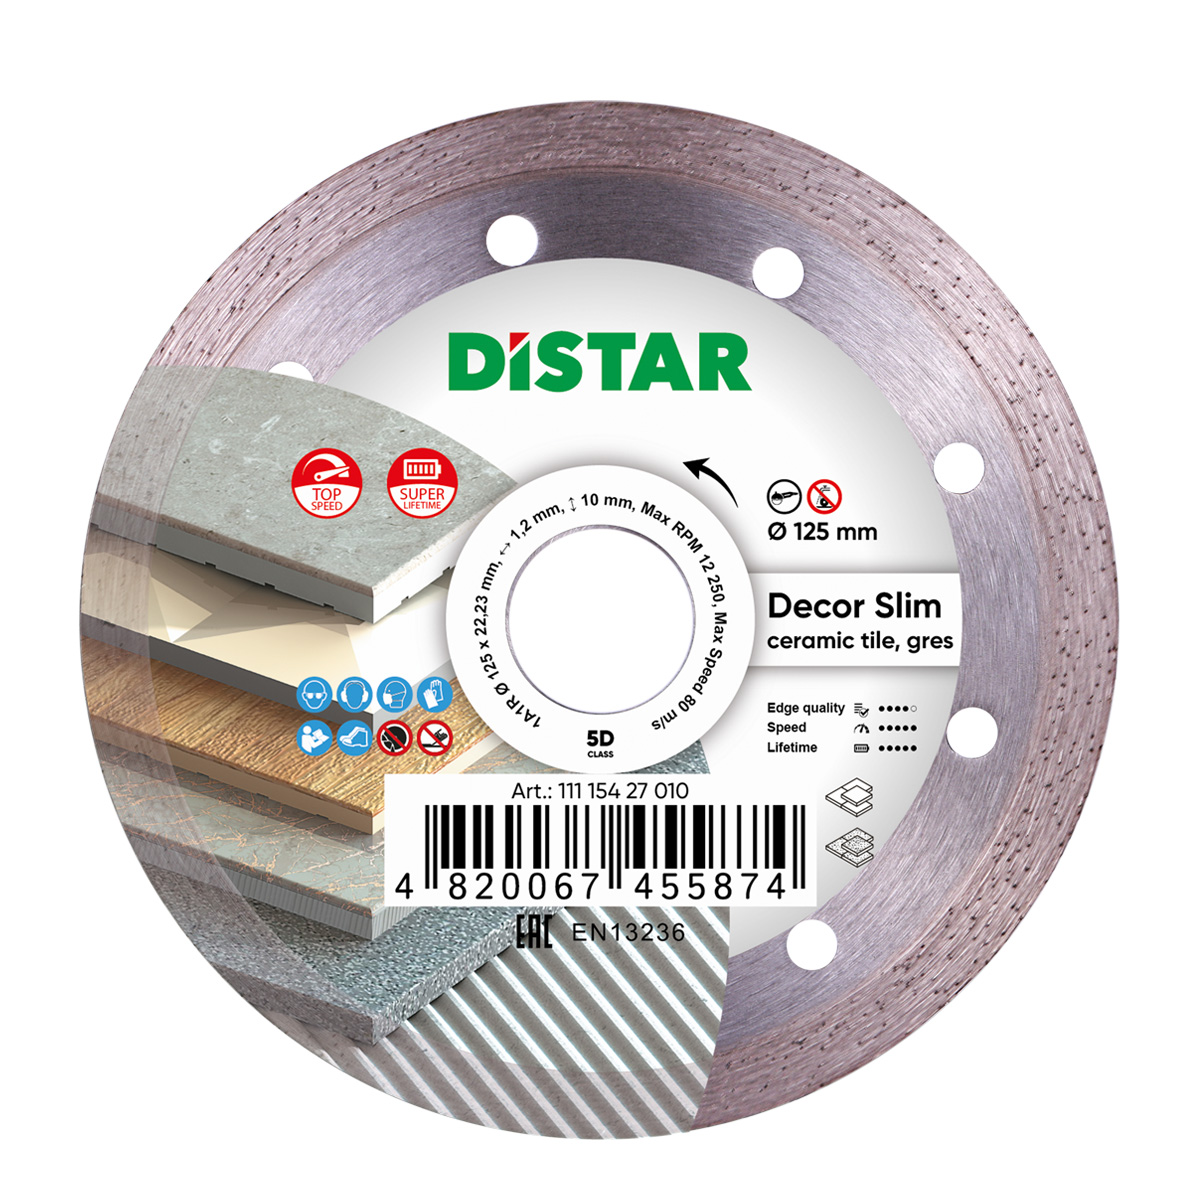 Диск алмазный отрезной по керамике и керамограниту для УШМ Distar 125 мм Decor Slim 5D диск алмазный отрезной по керамике и керамограниту distar 1a1r 250 мм hard ceramics 5d